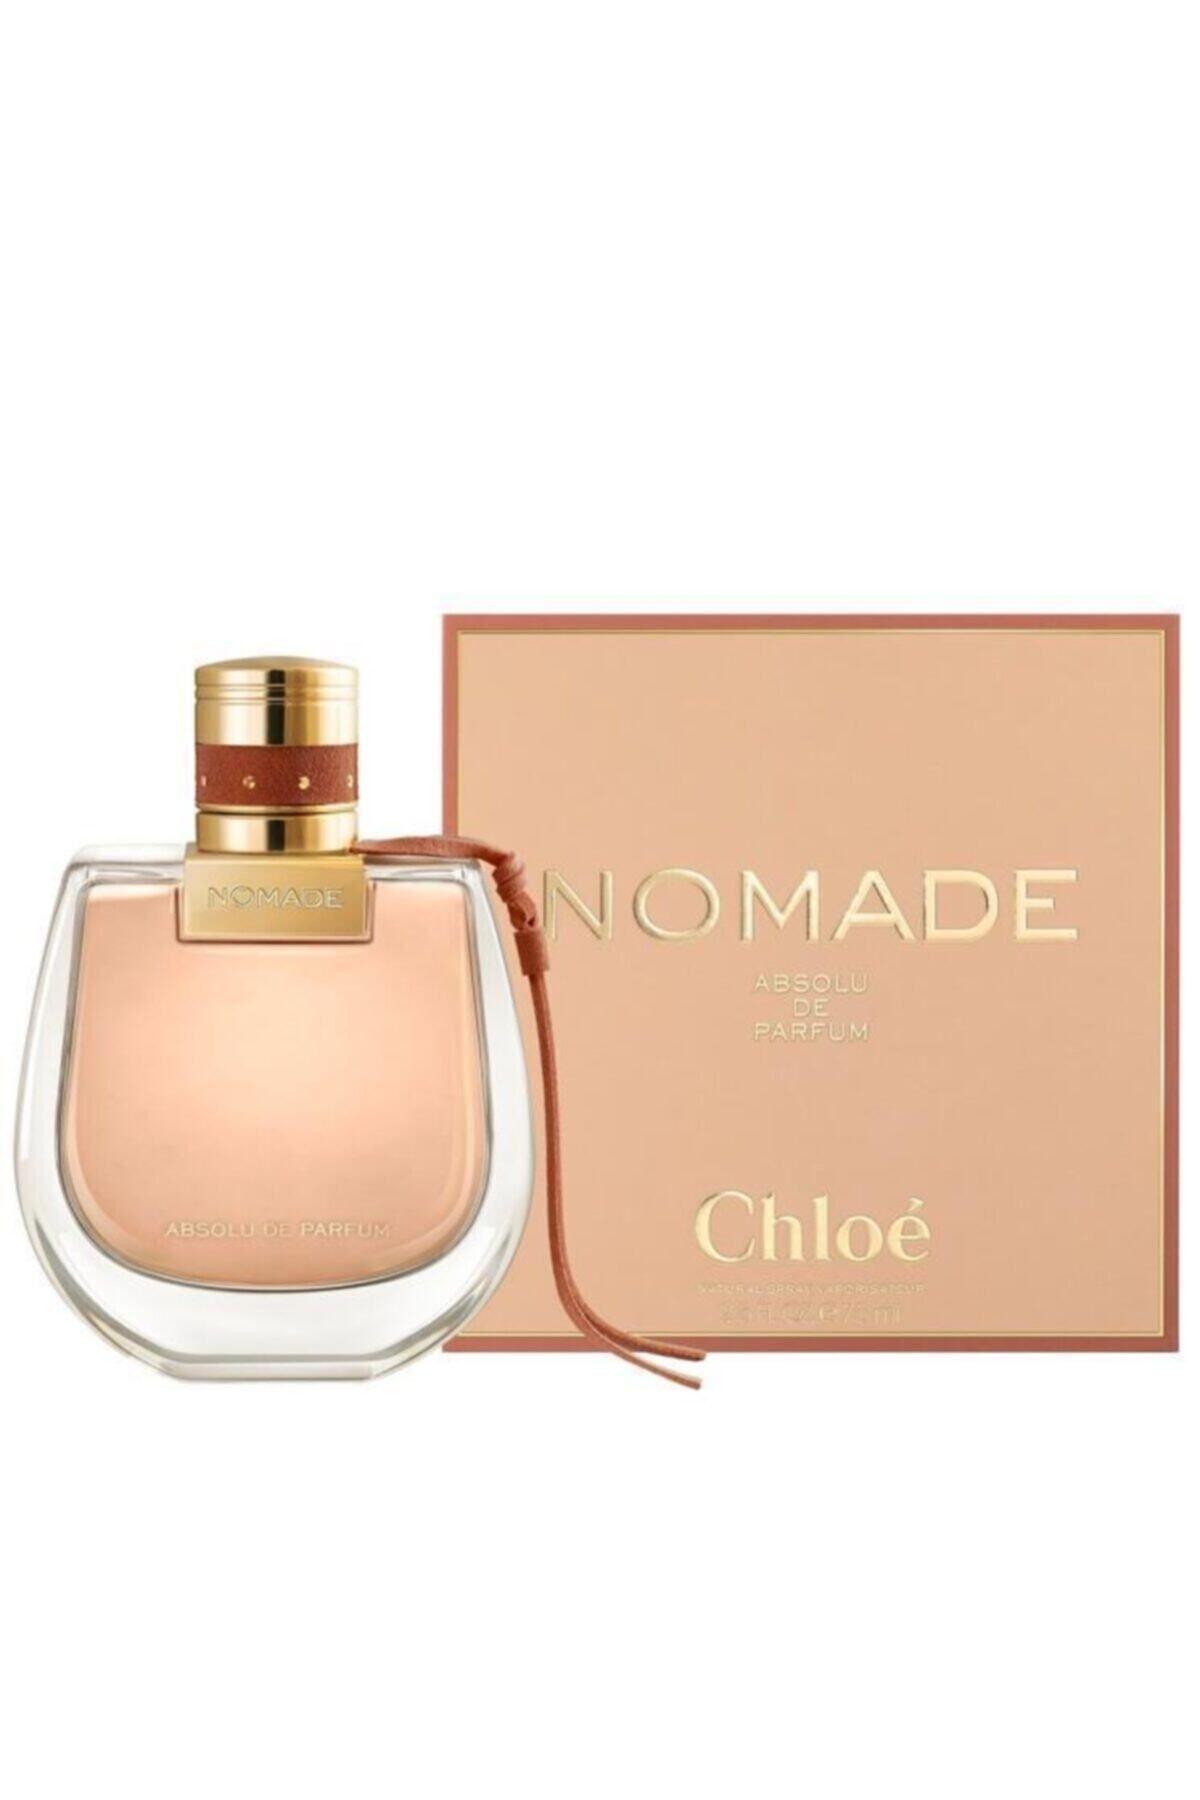 CHLOE Nomade Absolu Edp 75 Ml Kadın Parfüm